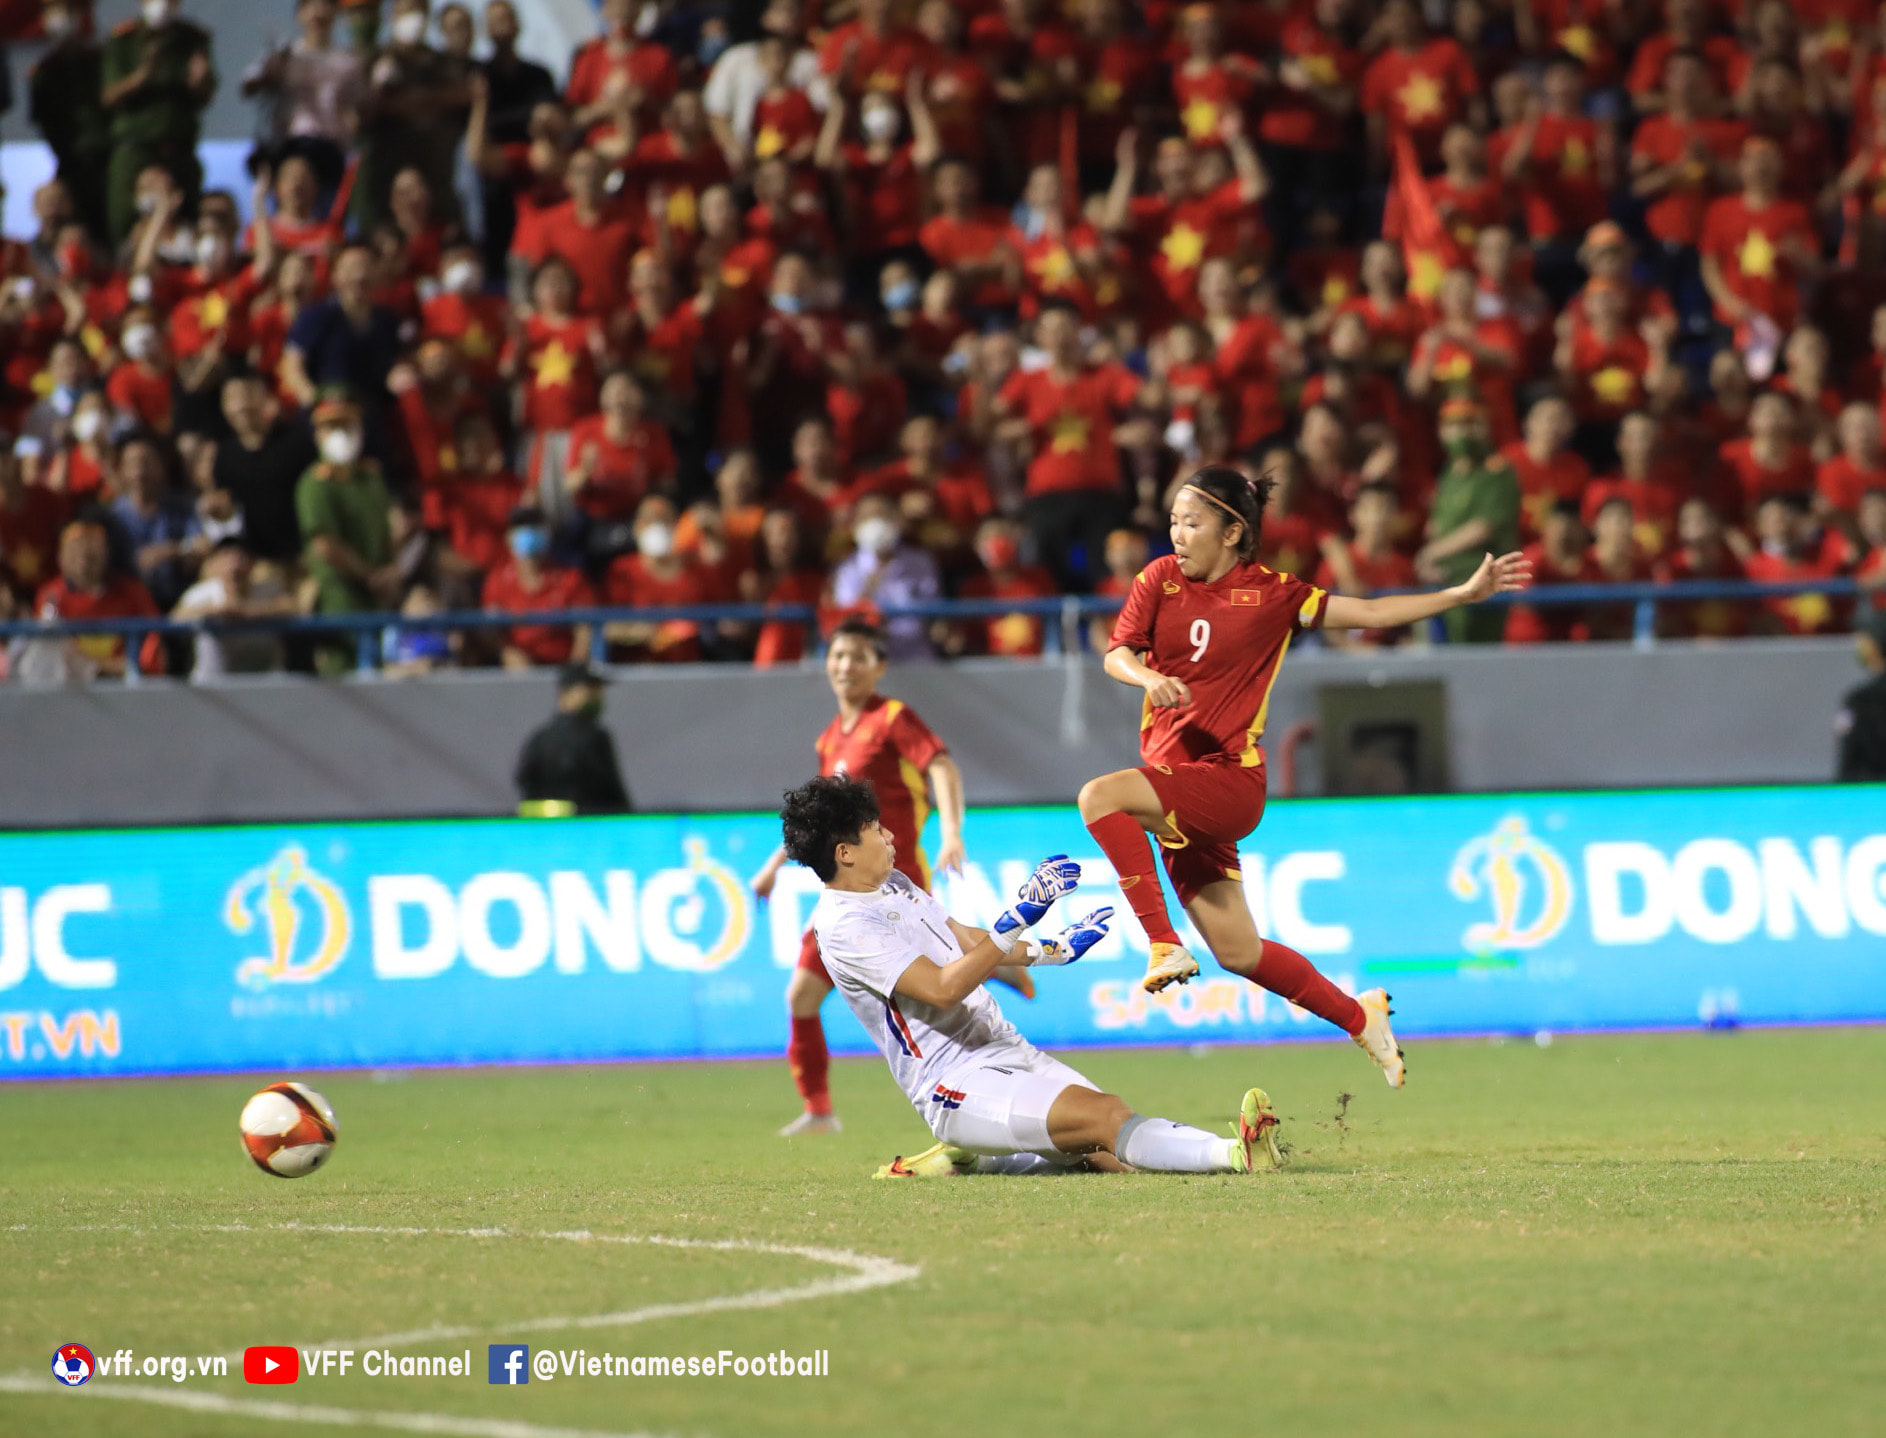 Bàn thắng duy nhất của Huỳnh Như ở phút 59 đã íup tuyển Việt Nam bảo vệ thành công ngôi hậu bóng đá Đông Nam Á đồng thời  giúp bóng đá nữ Việt Nam lập cú hat-trick tuyển vời với 3 kỳ vô đ8i5ch SEA Gamea 2017, 2019 và 2022.